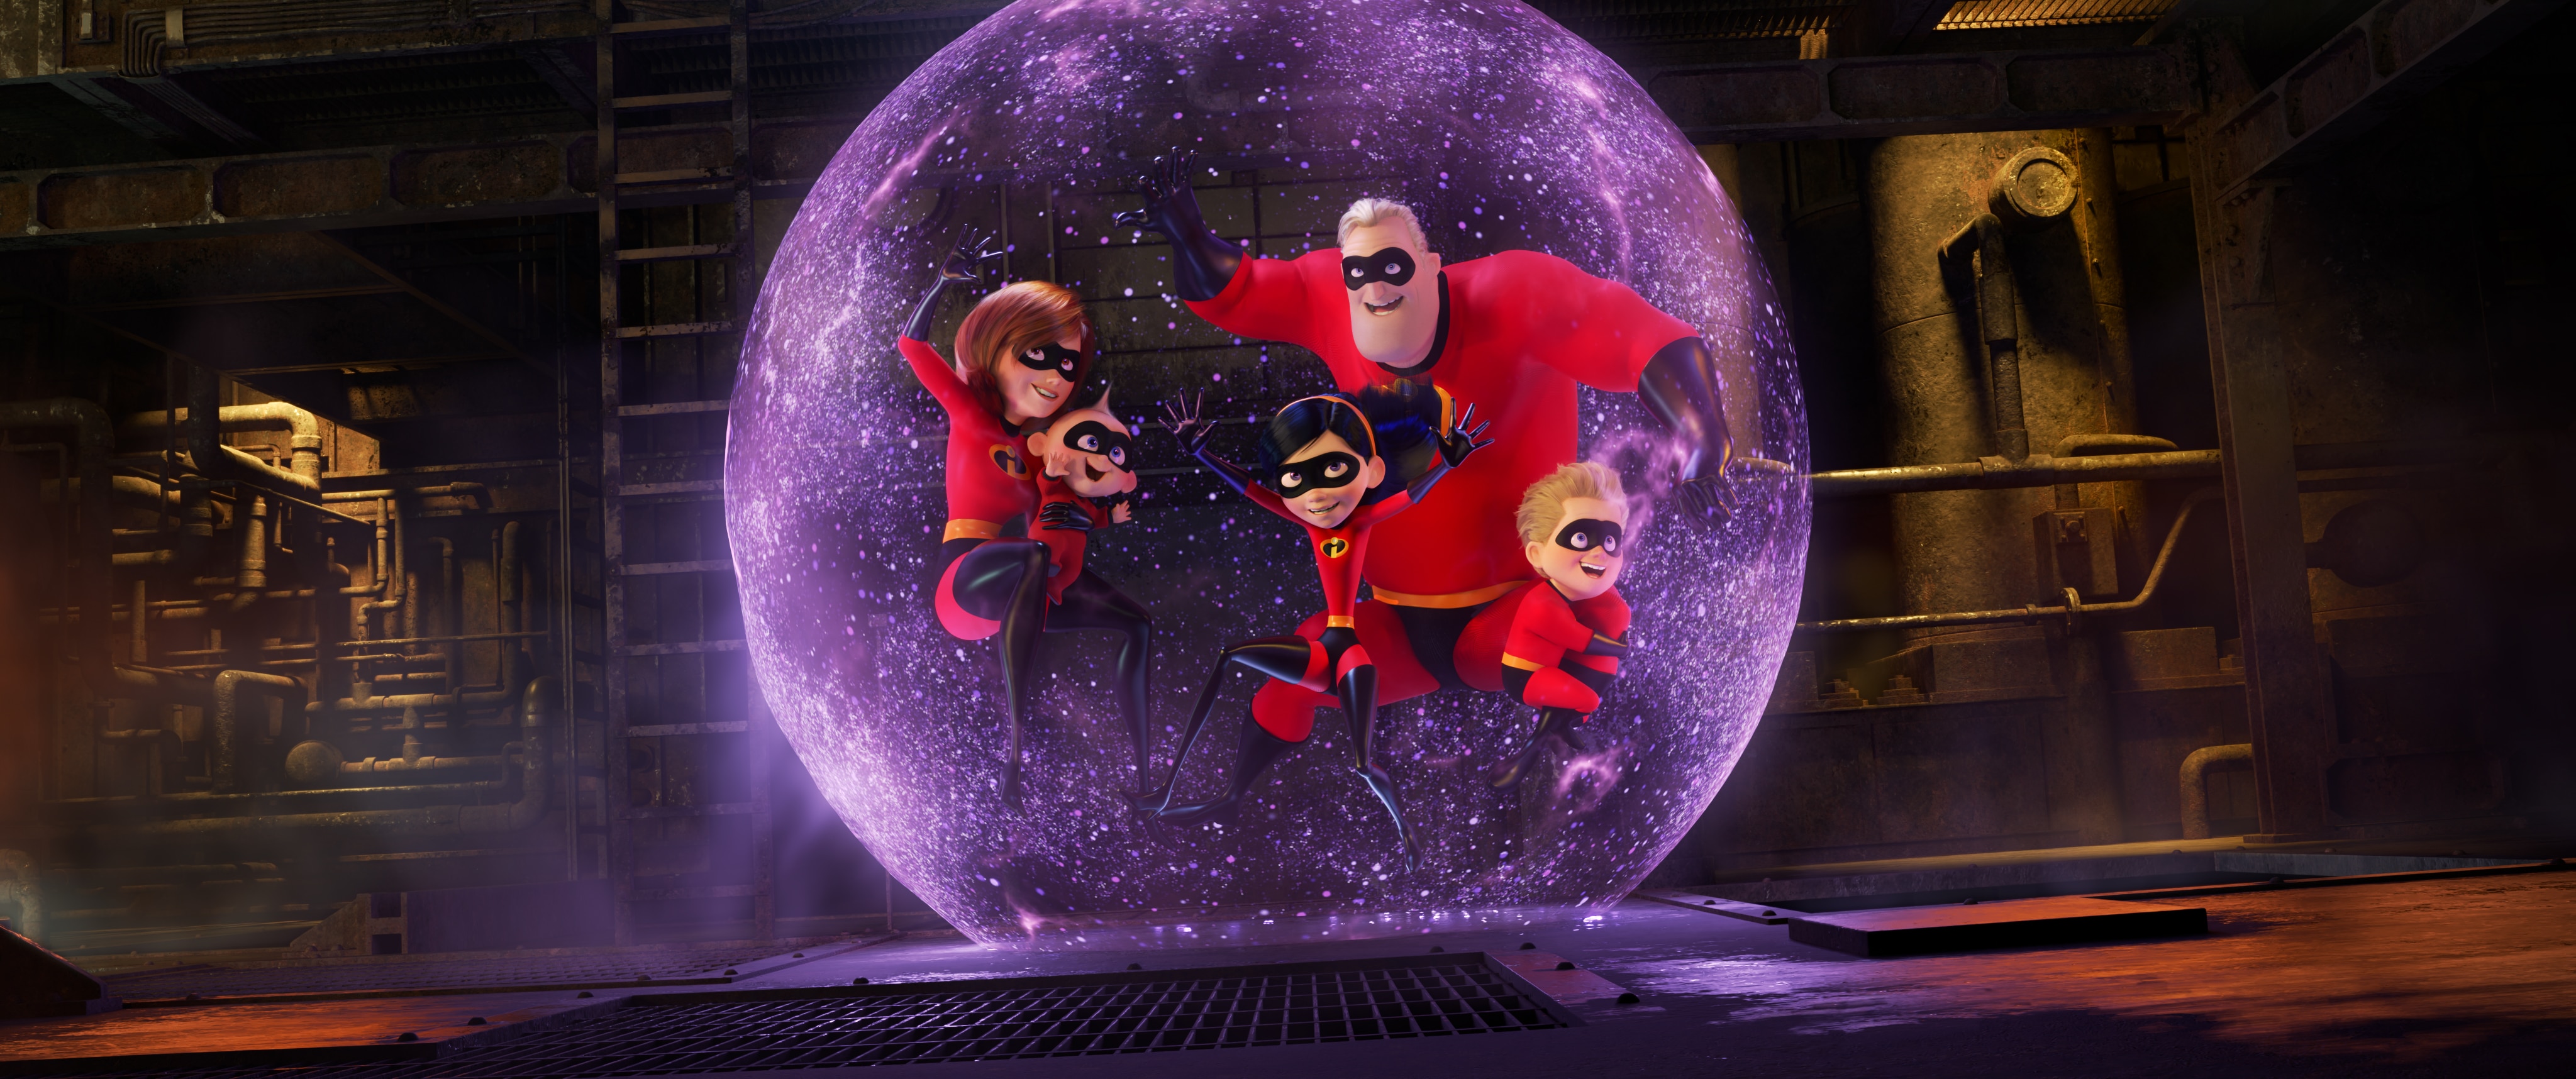 Disney•Pixar’s INCREDIBLES 2 - New Trailer & Poster! #Incredibles2